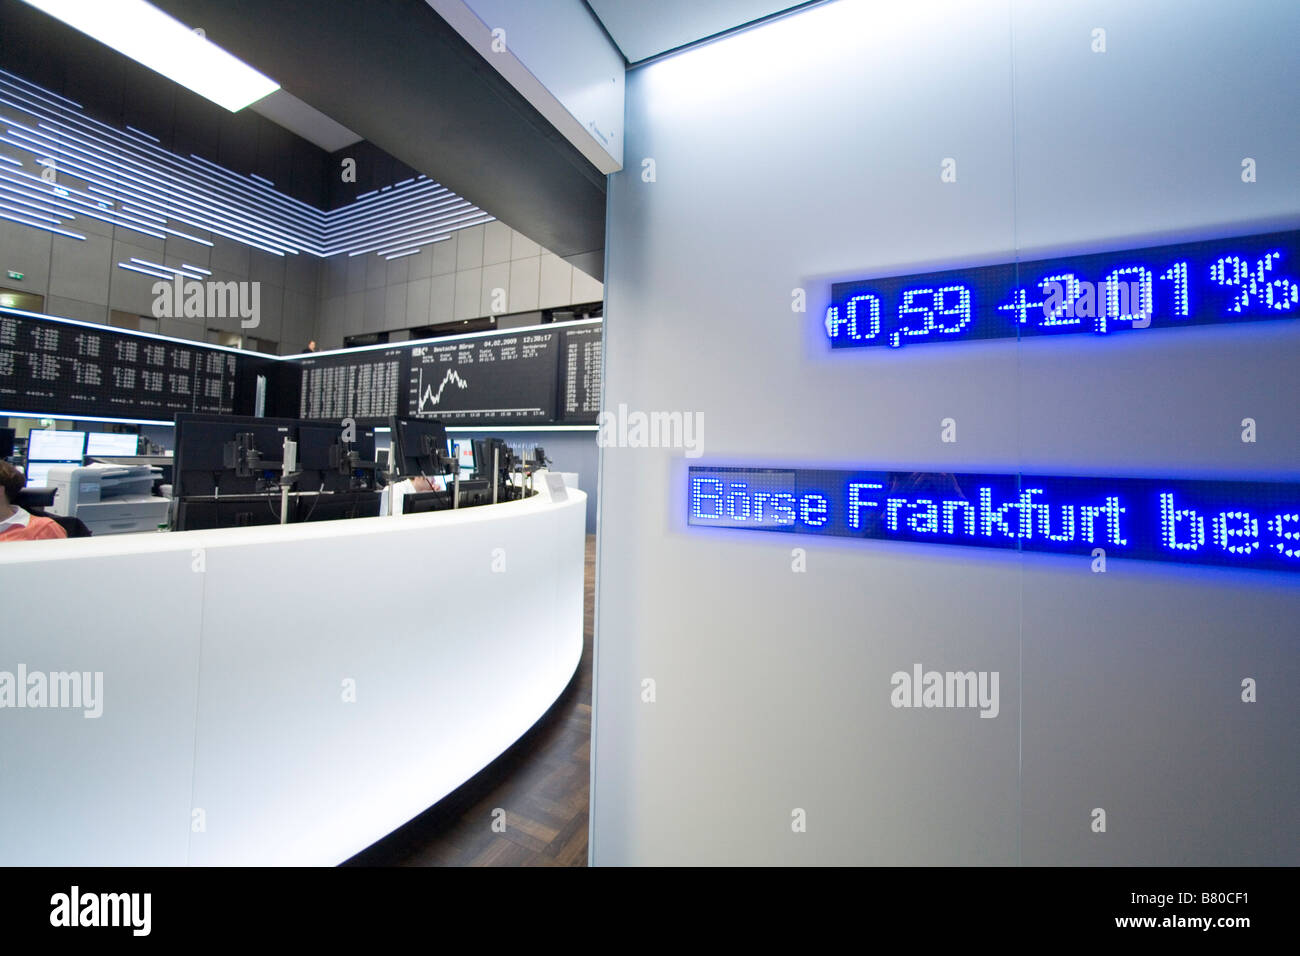 Il trading floor della Borsa di Francoforte Foto Stock